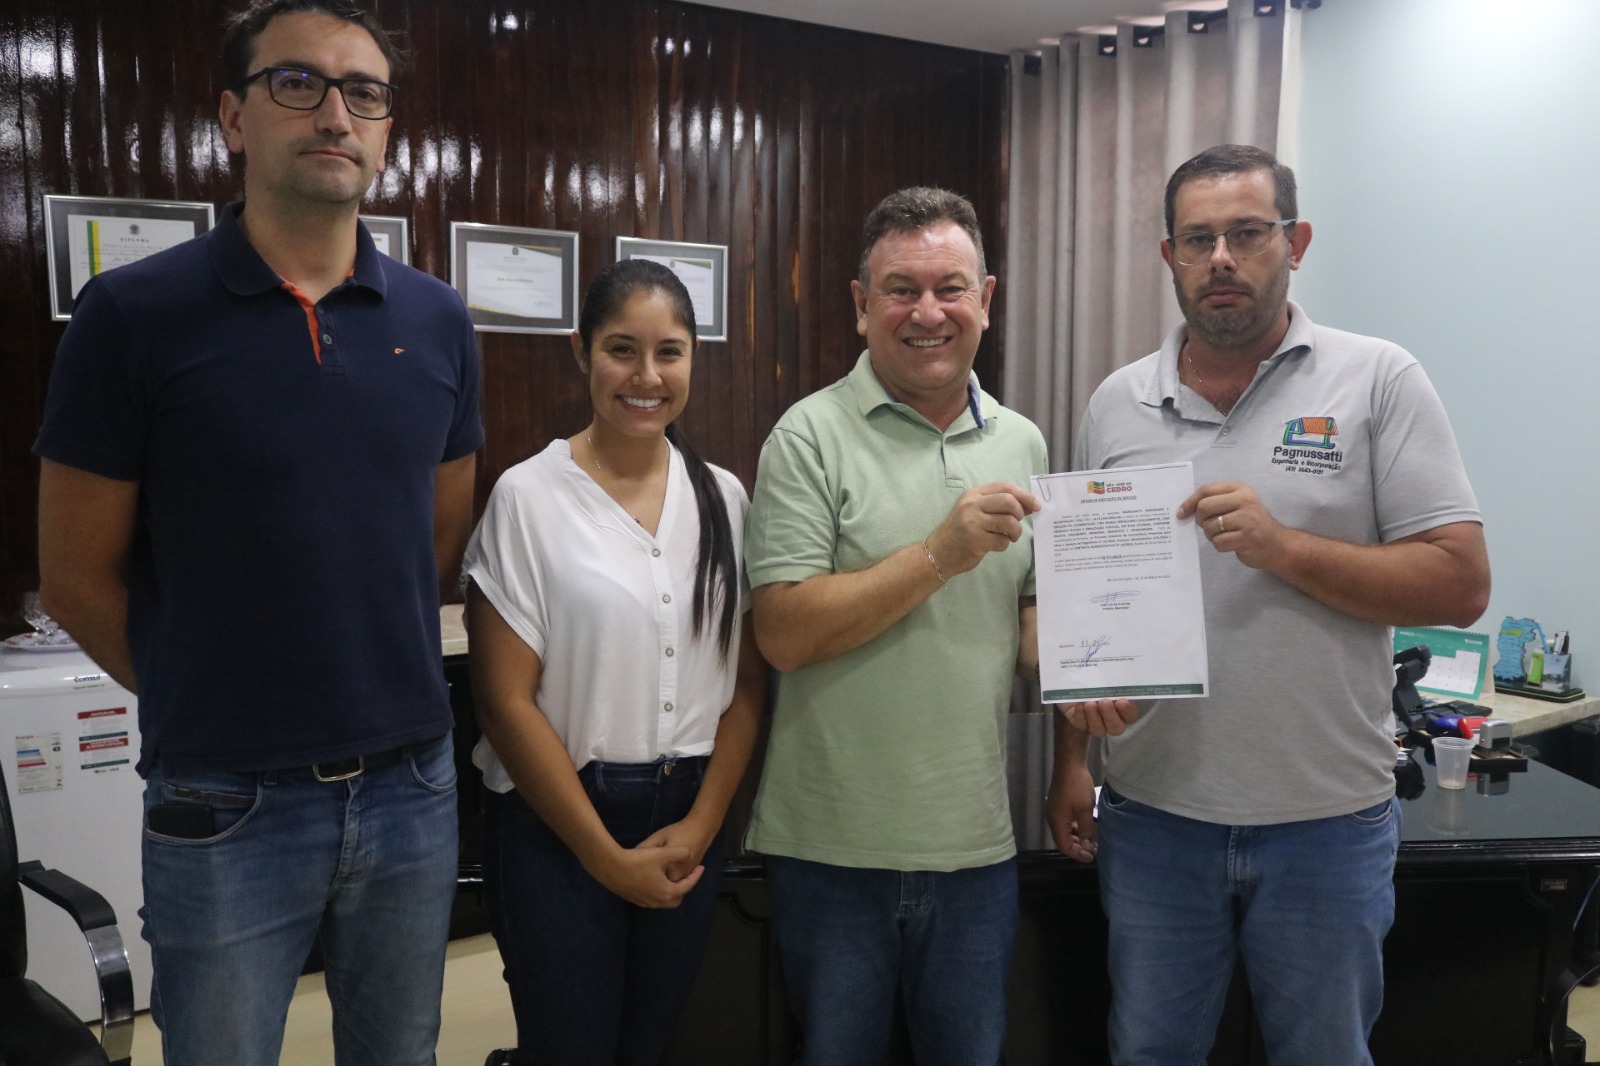 Recentemente o município de São José do Cedro deu mais um passo em direção ao desenvolvimento urbano com a assinatura da Ordem de Serviço para a execução de obras de calçamento em quatro trechos estratégicos da área urbana.